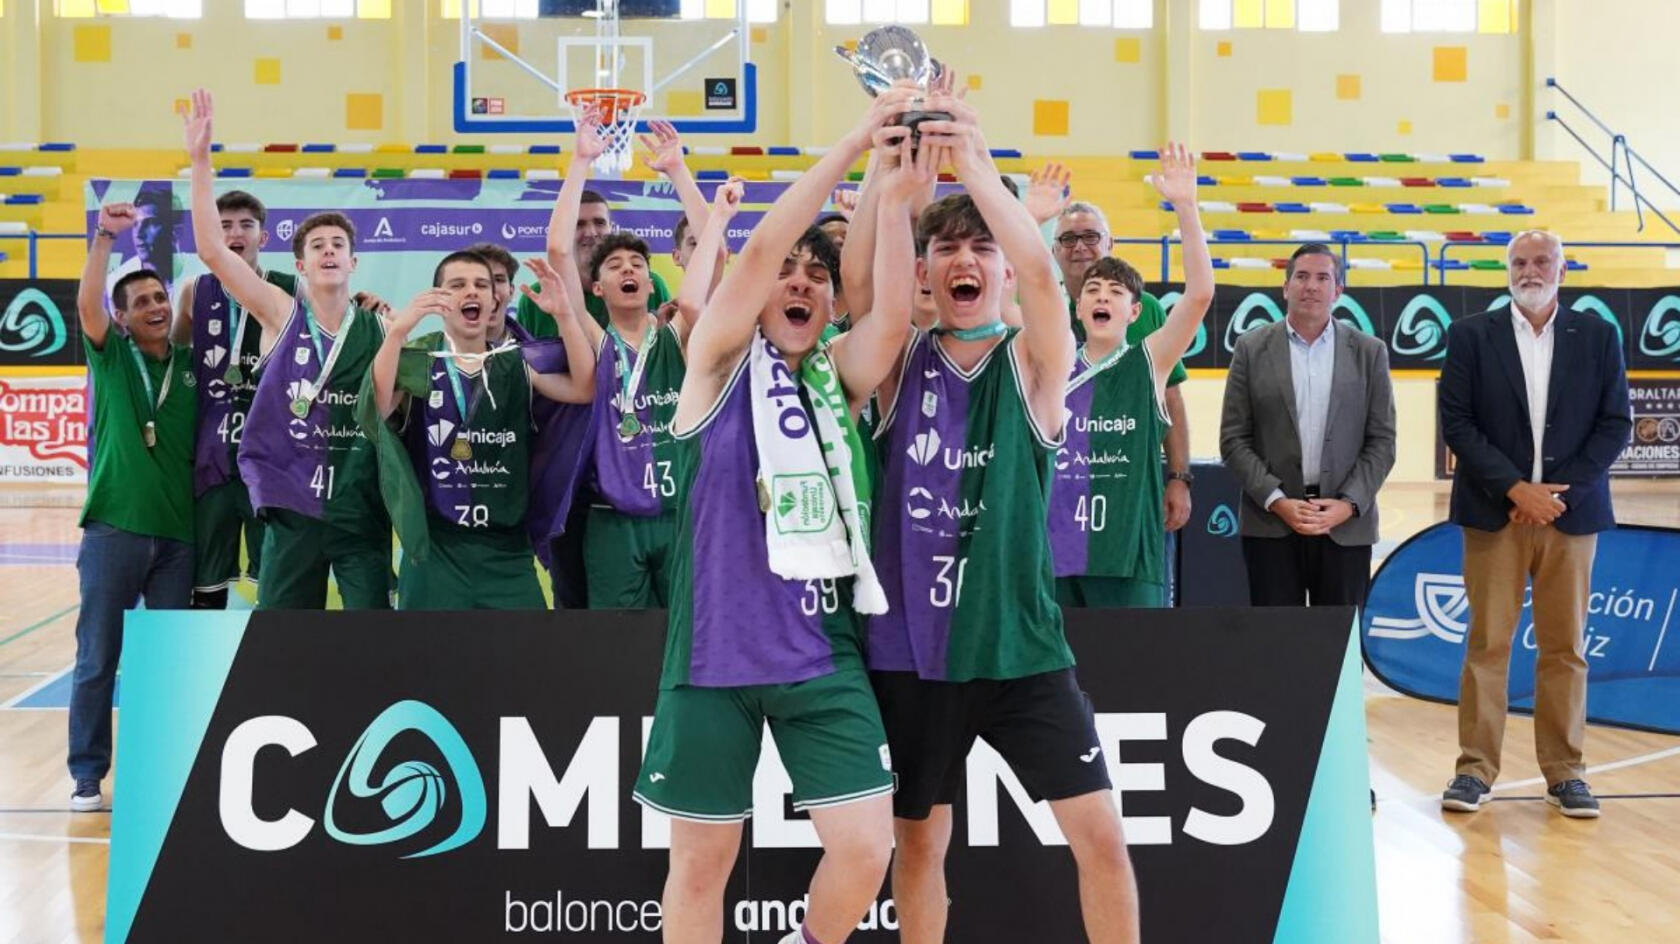 Unicaja Andalucía U14, Andalusian Champions 